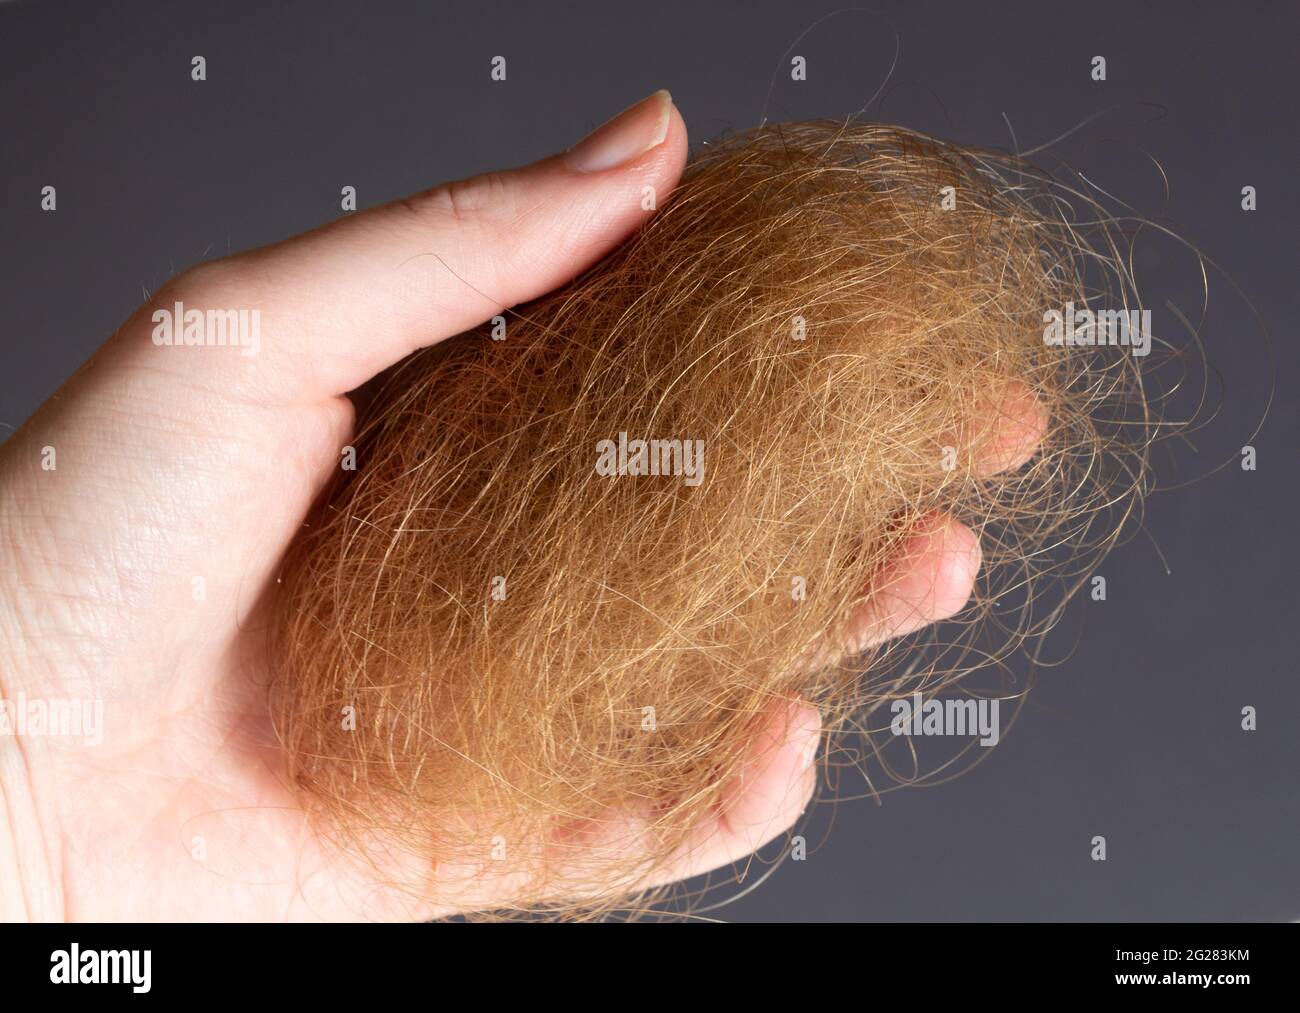 Balle de poils blonds dans la main d'une femme Photo Stock - Alamy